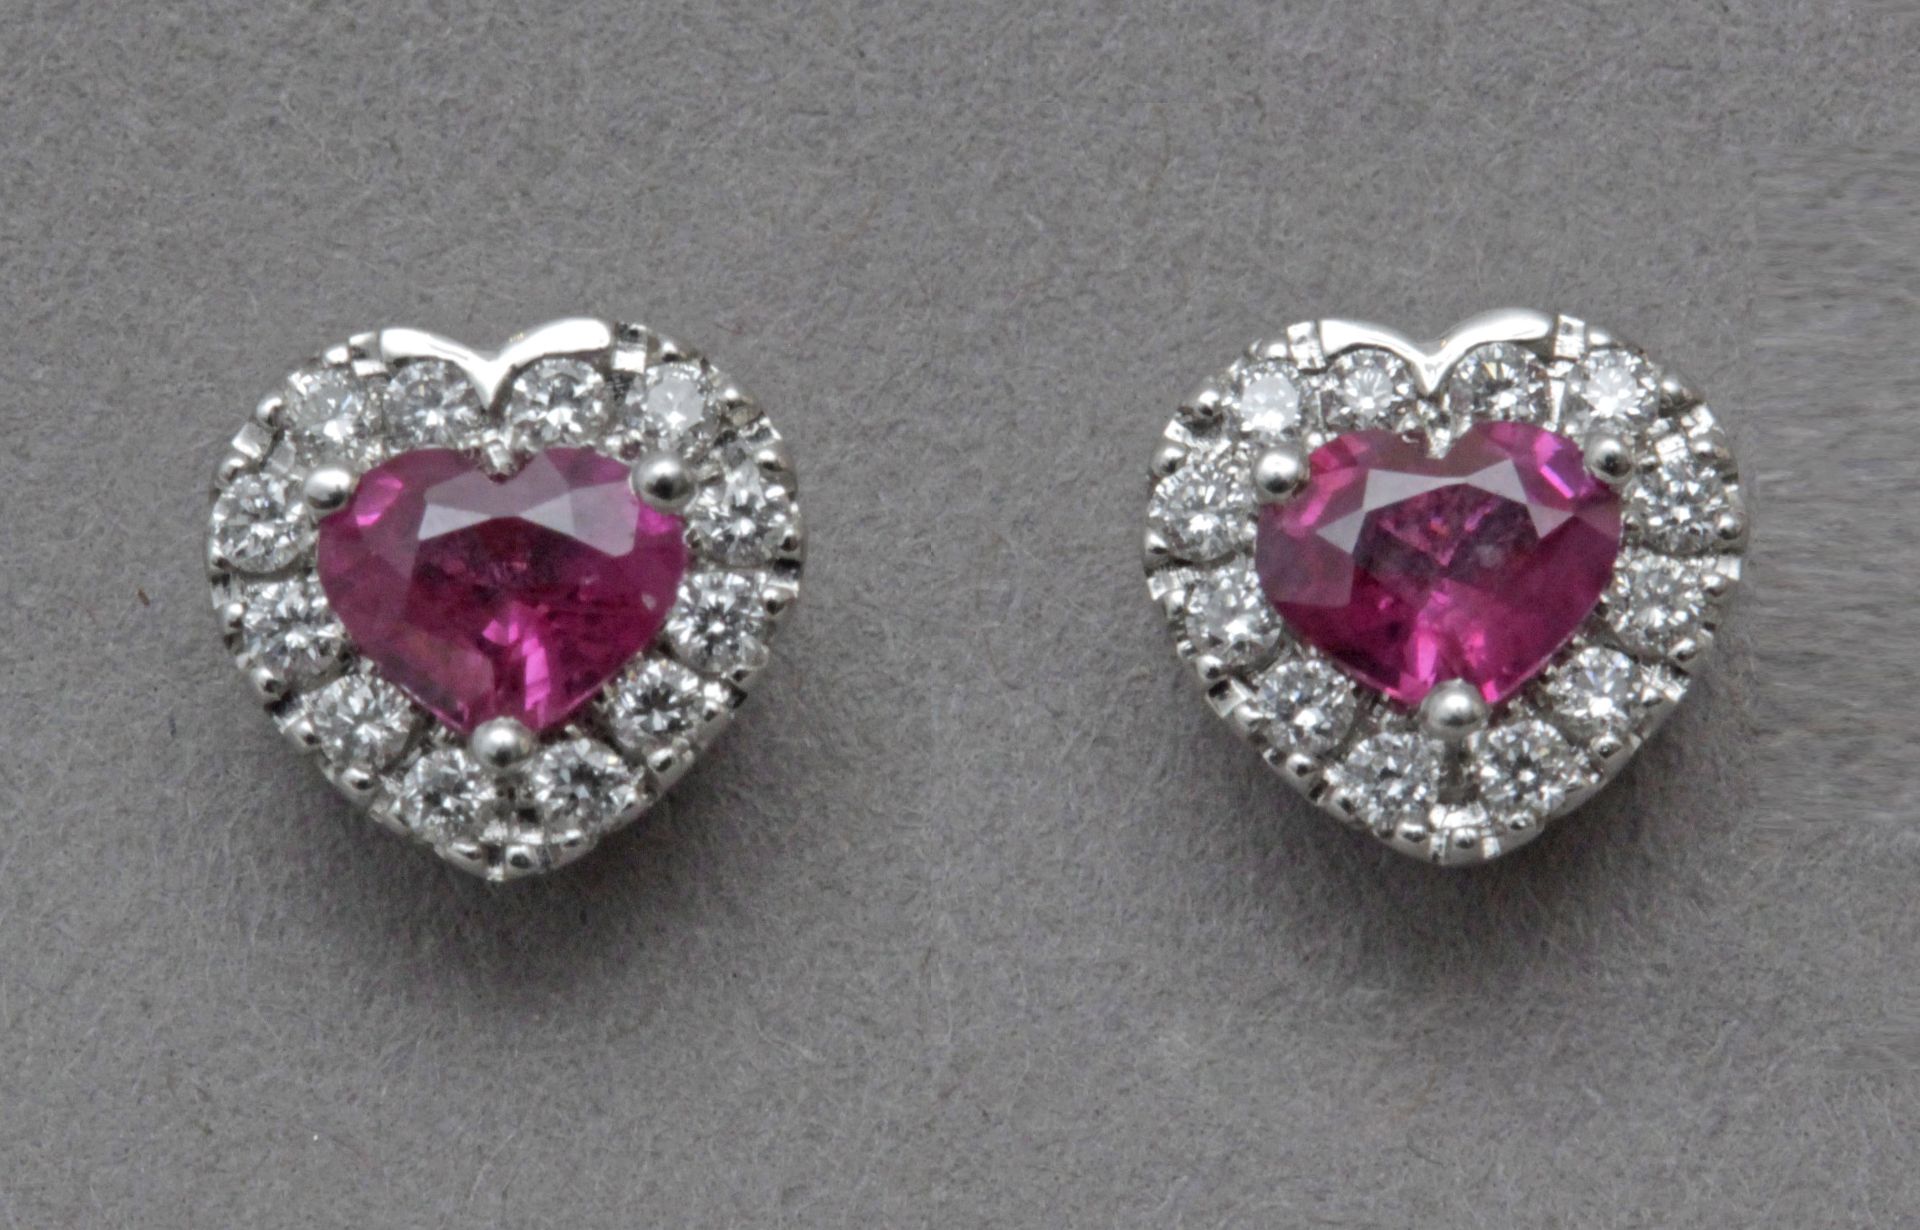 A diamond and rubies heart shaped stud earrings